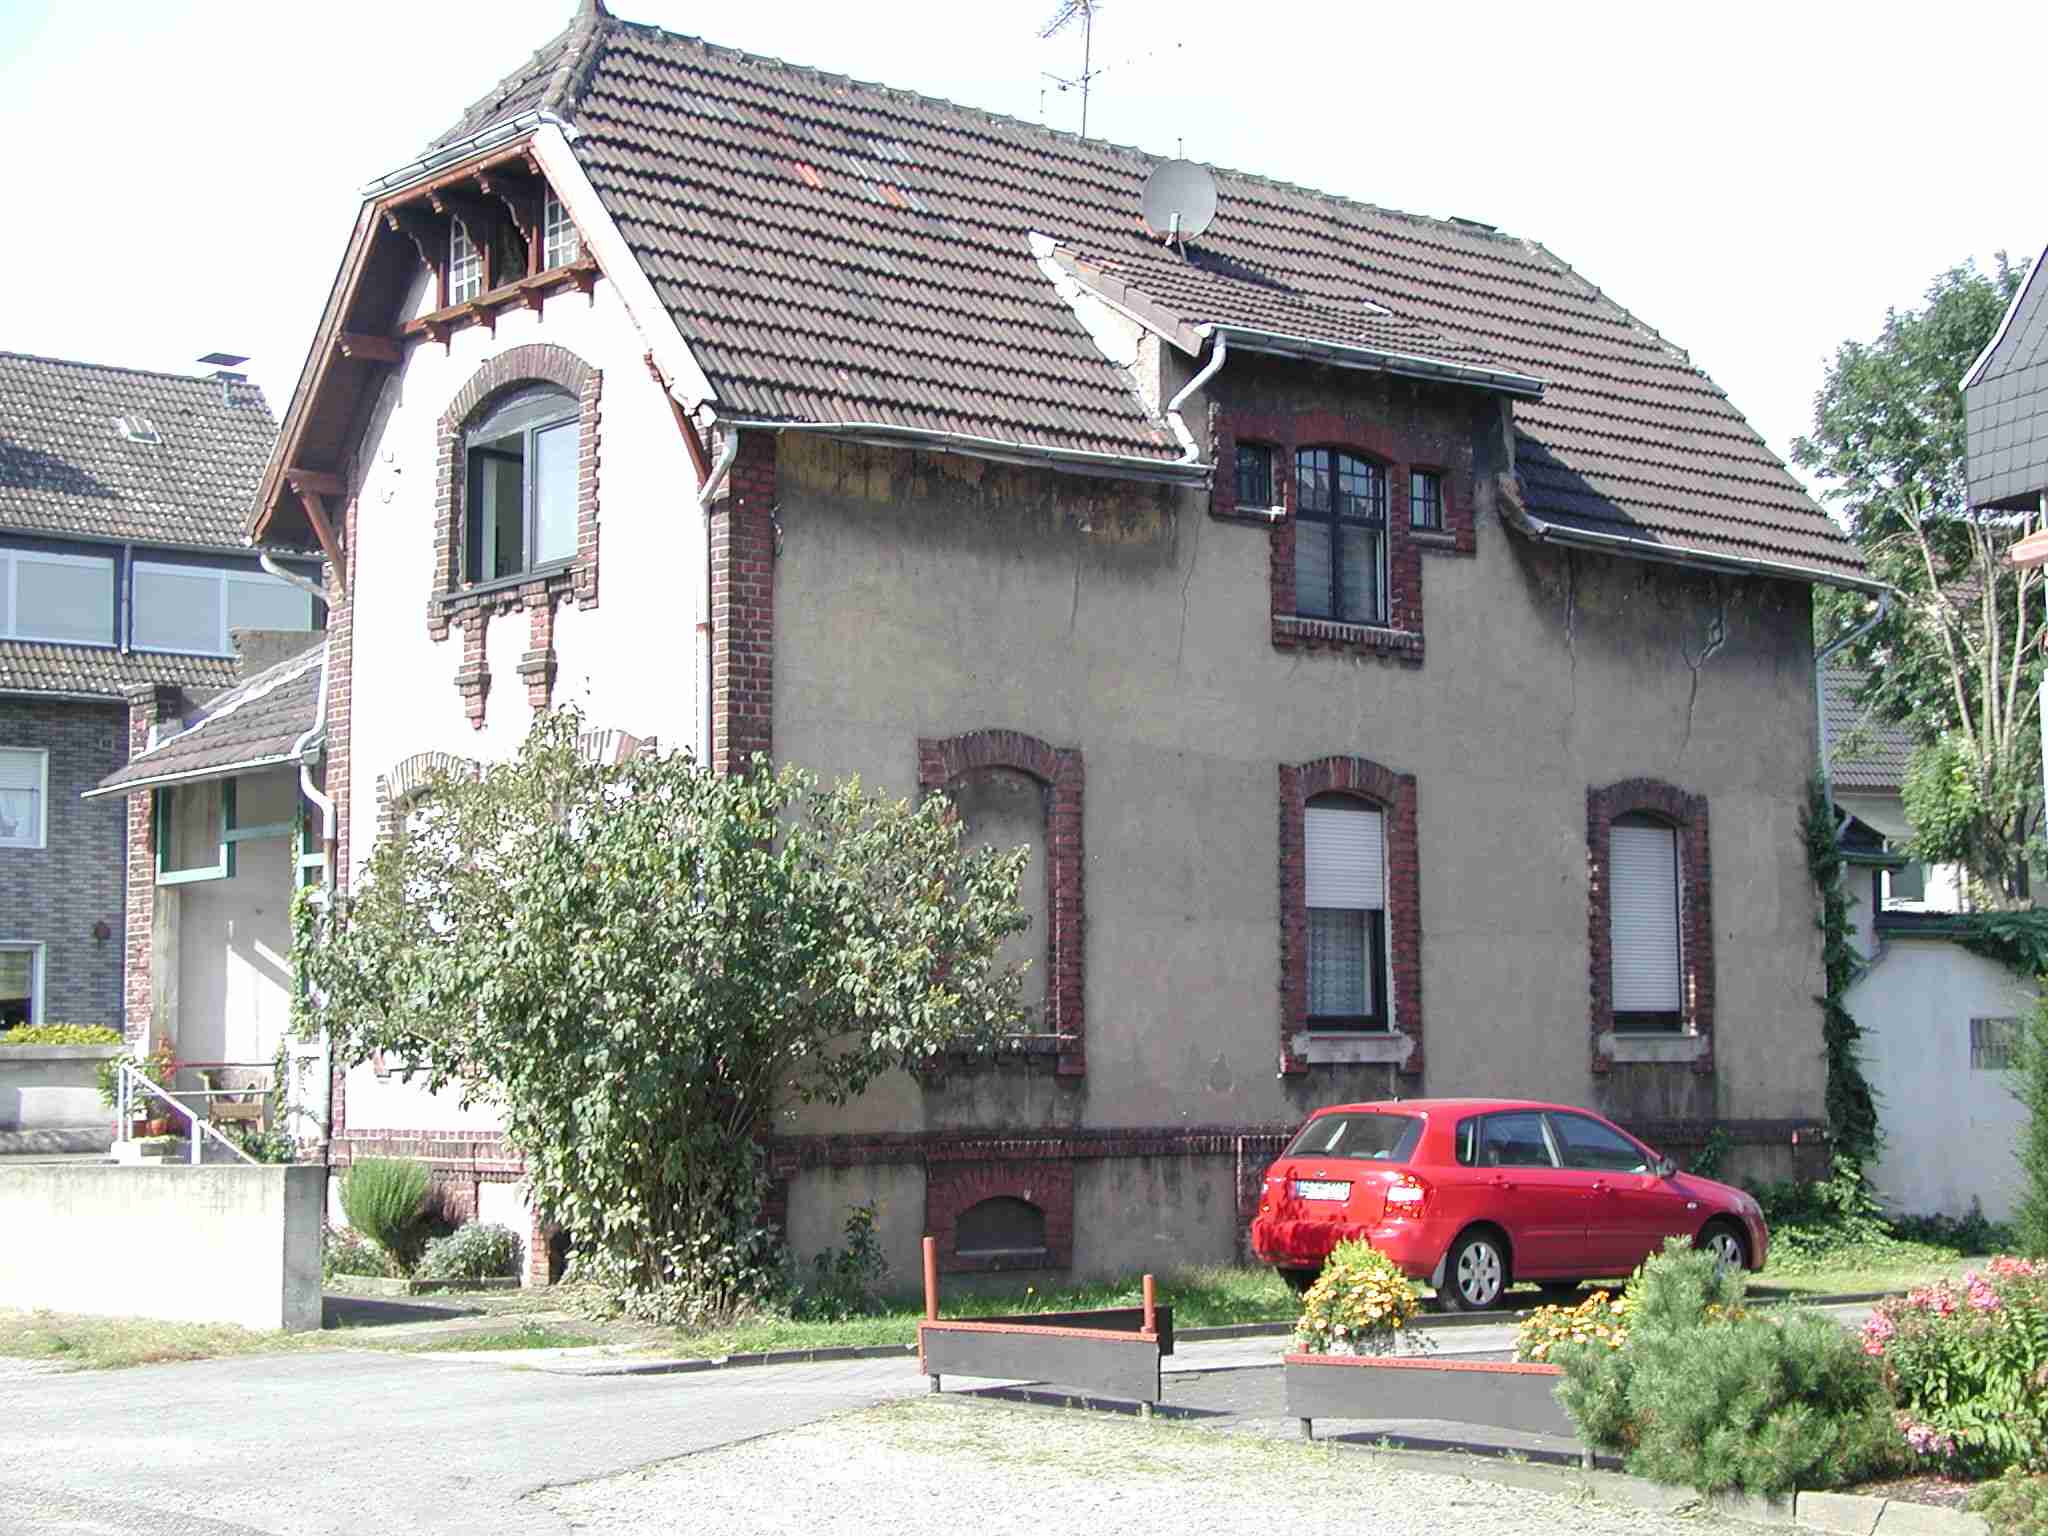 Villa Benninghoff, Oberhausen. Home of Sjhackman-reromanus